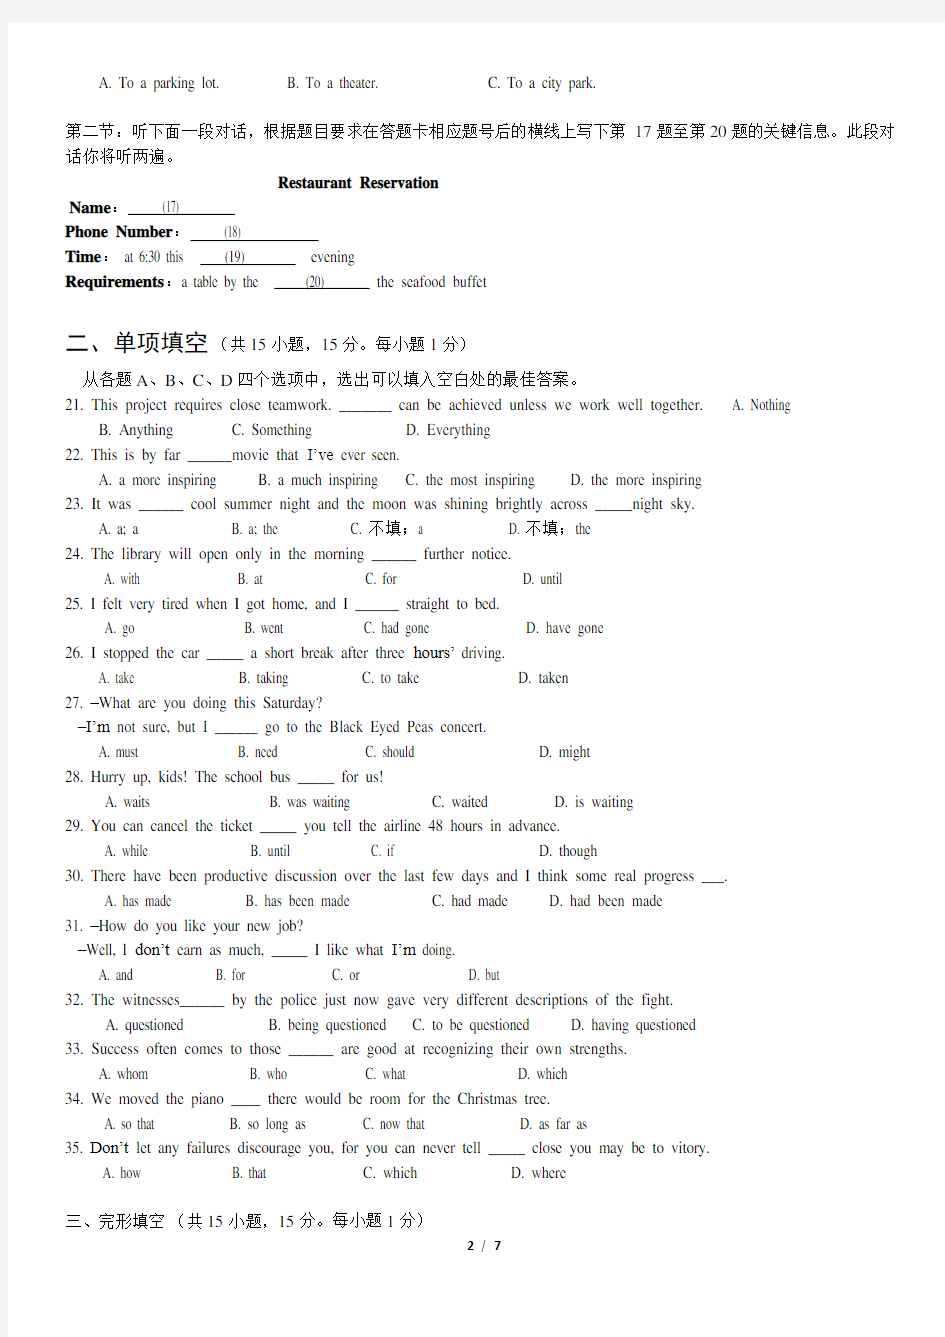 2015年北京市夏季高中会考英语试卷(包含答案解析)